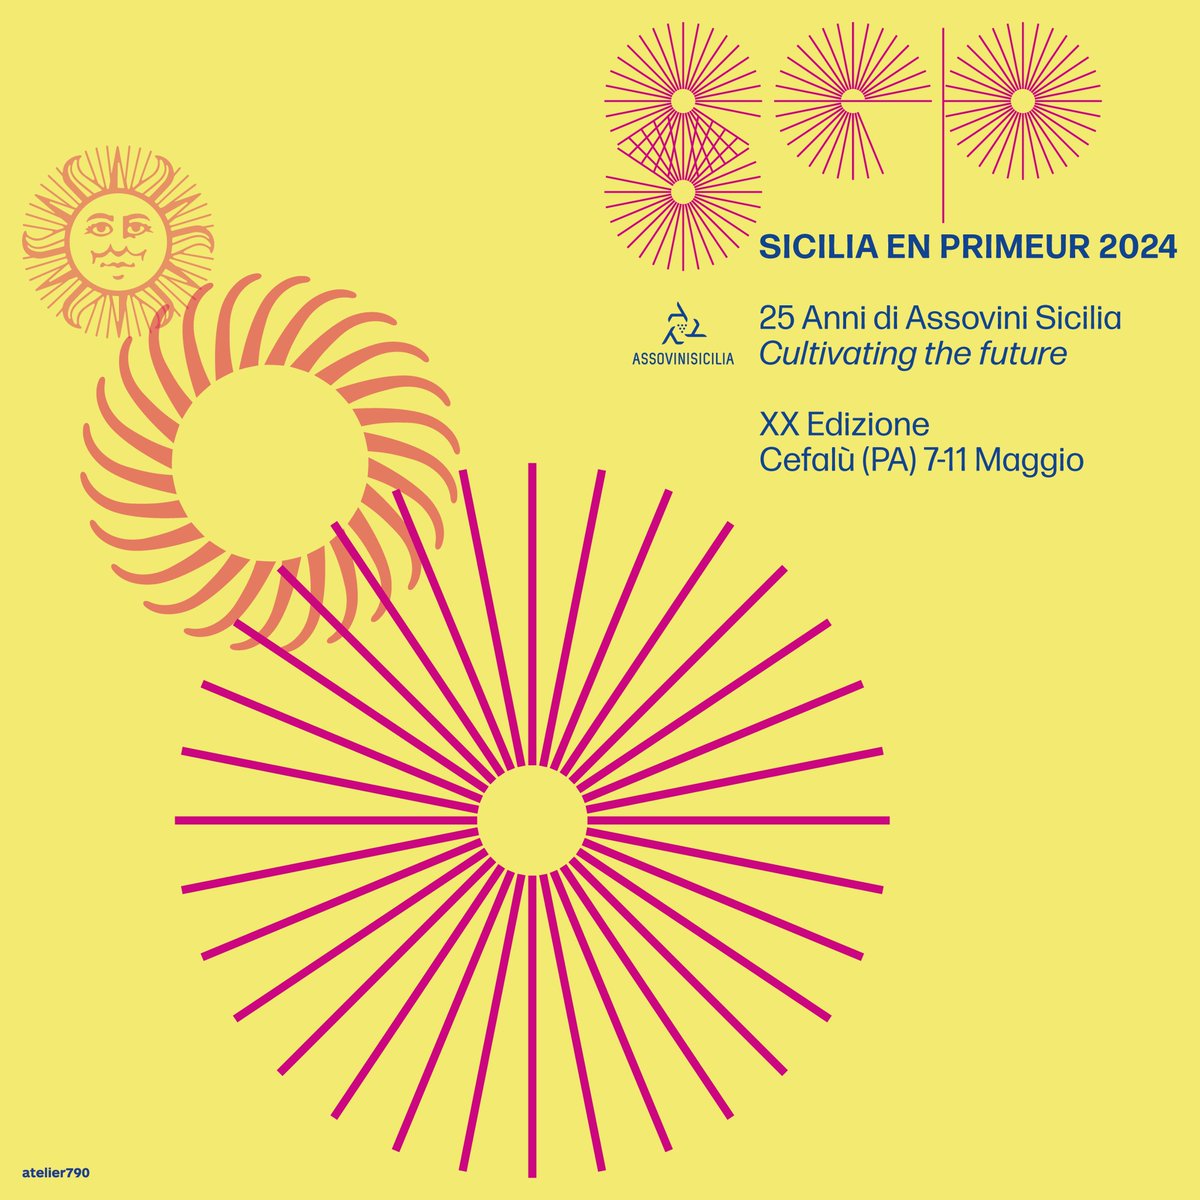 Sicilia en Primeur 2024: Cultivating the future 7-11 Maggio, Cefalù (PA)